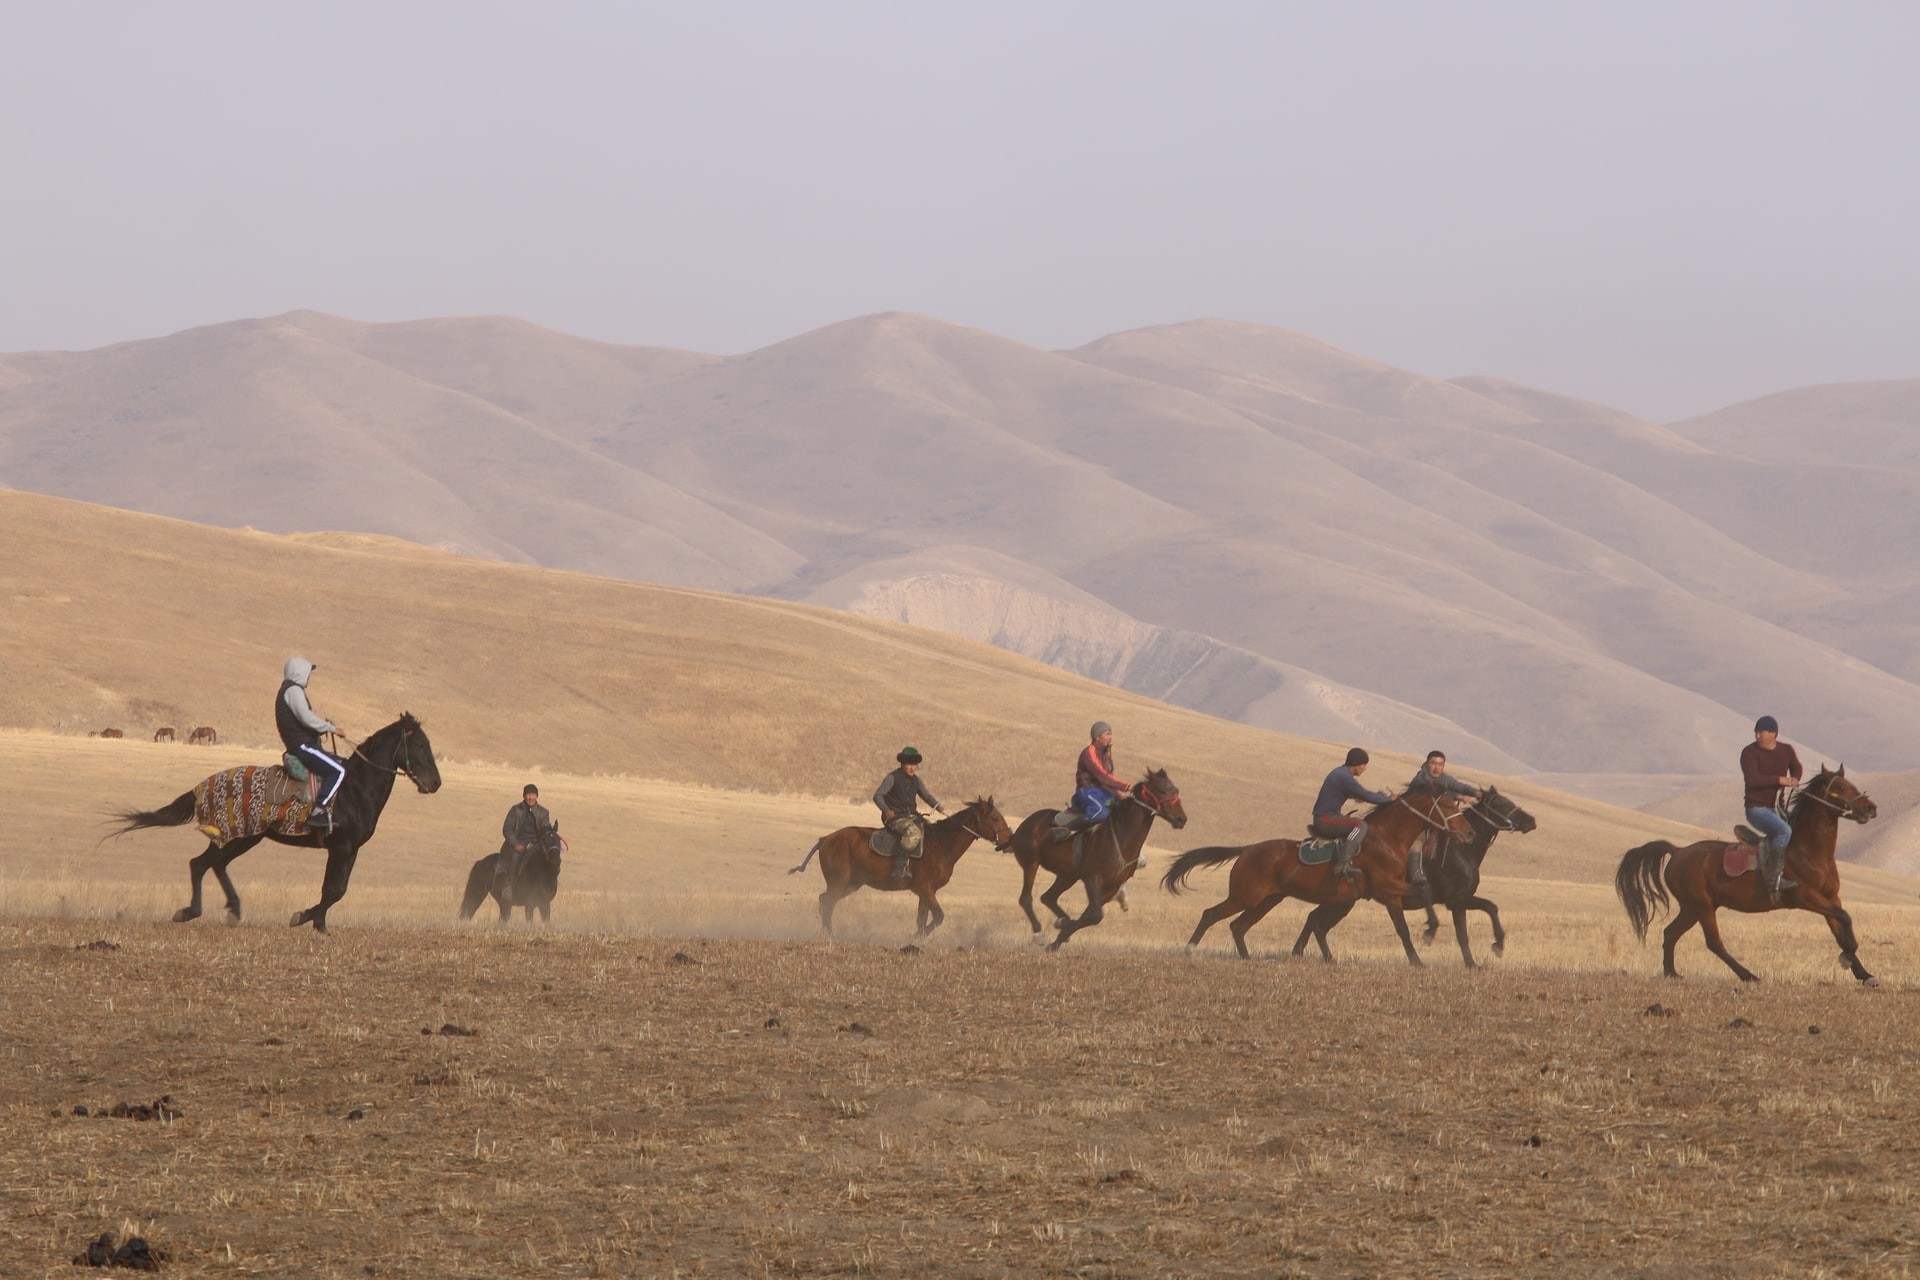 قوة الخيول العربية الأصيلة وصحتها الجيدة